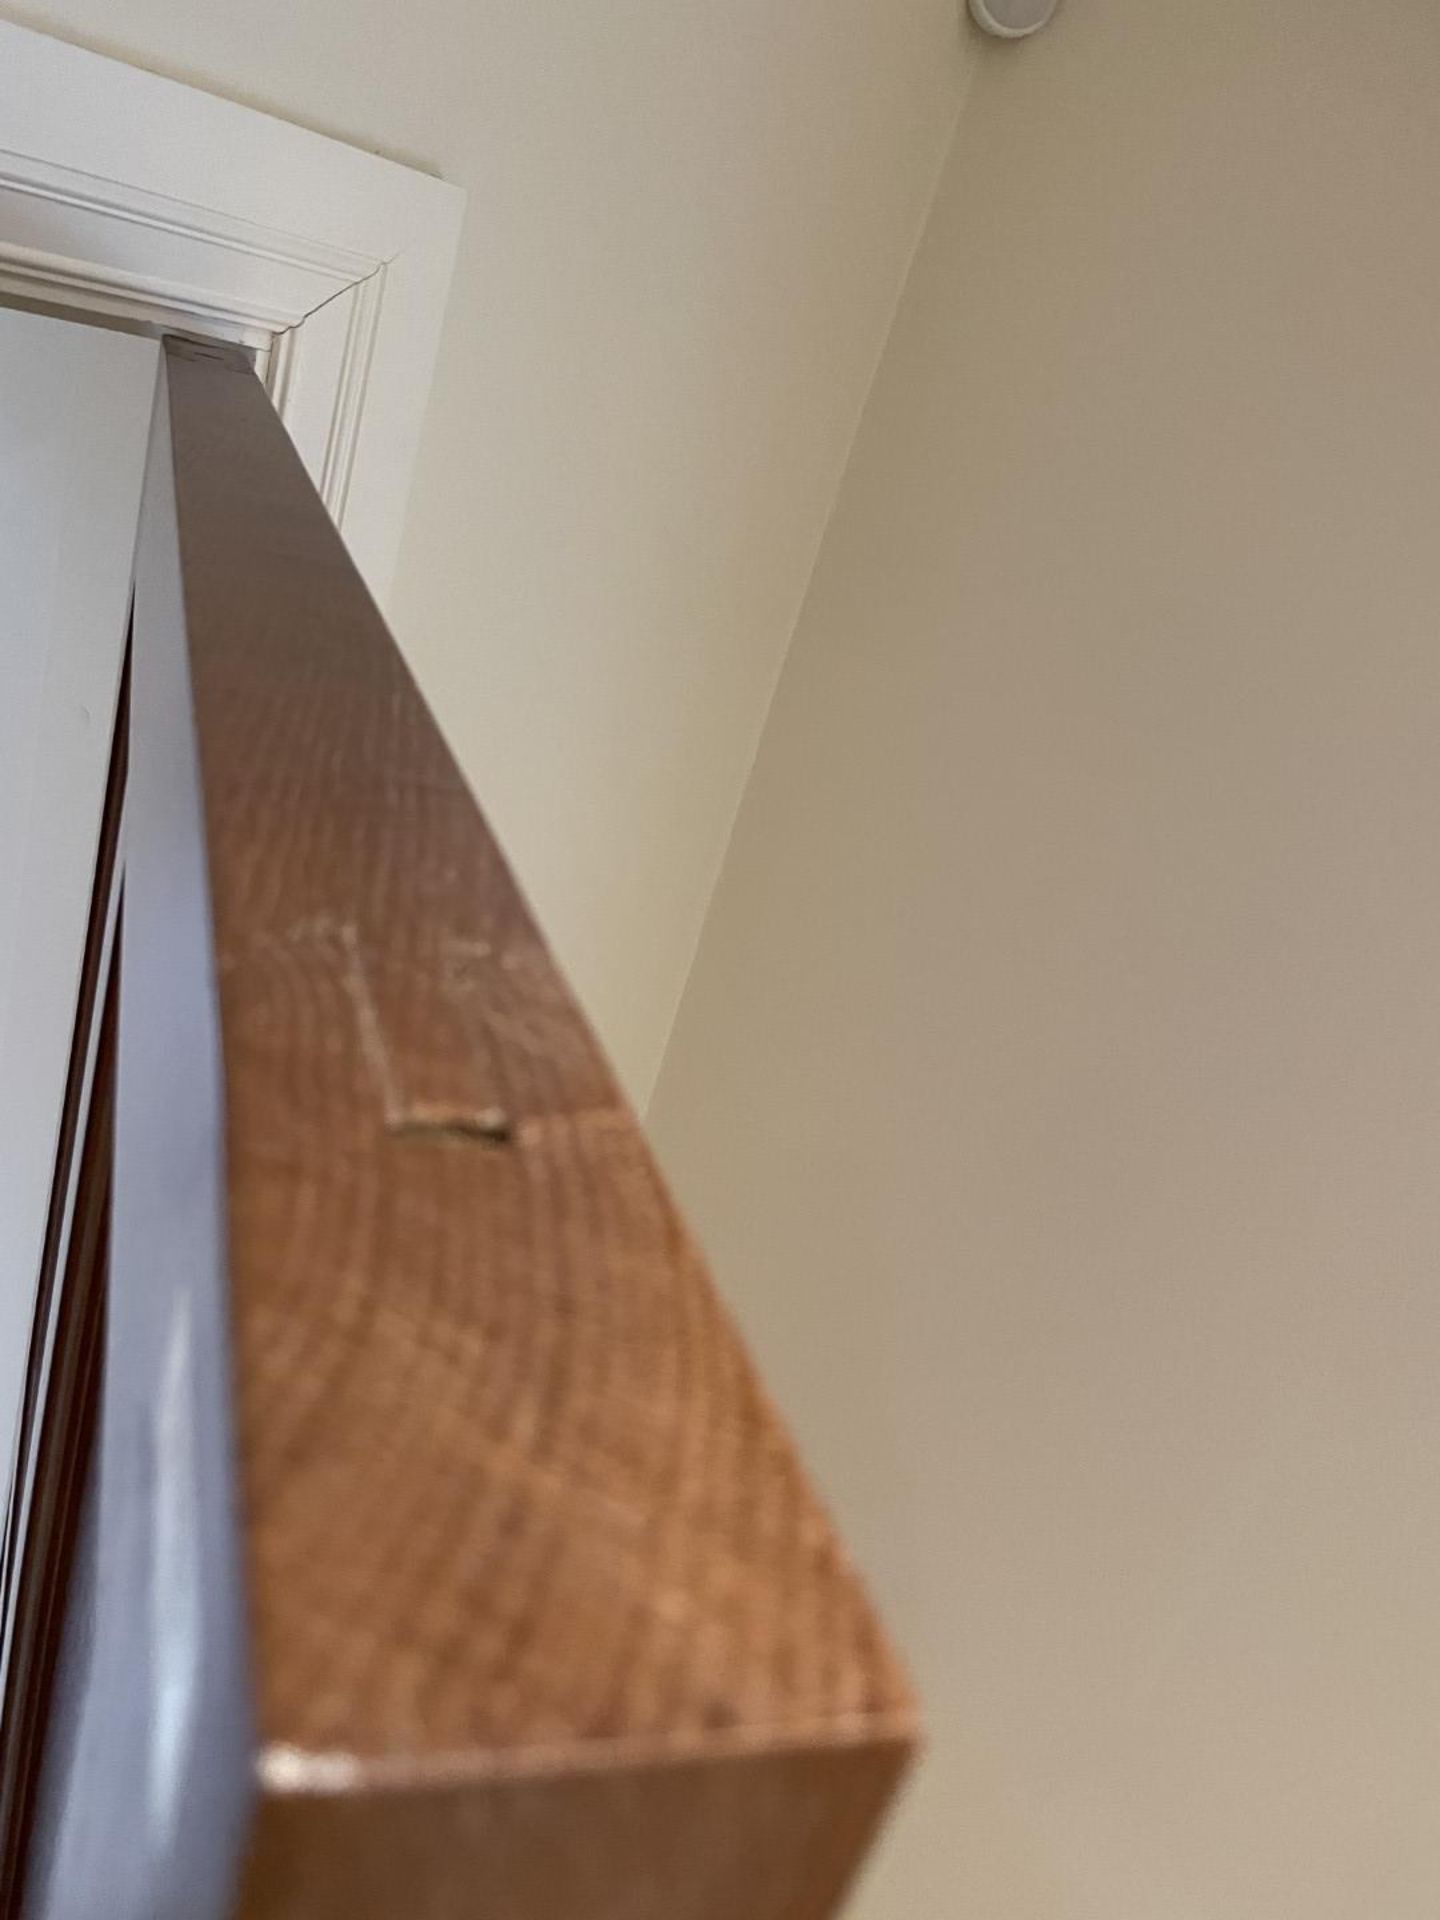 1 x Solid Oak Wooden Lockable Internal Door - Includes Handles and Hinges - Ref: PAN286 / - Image 4 of 17